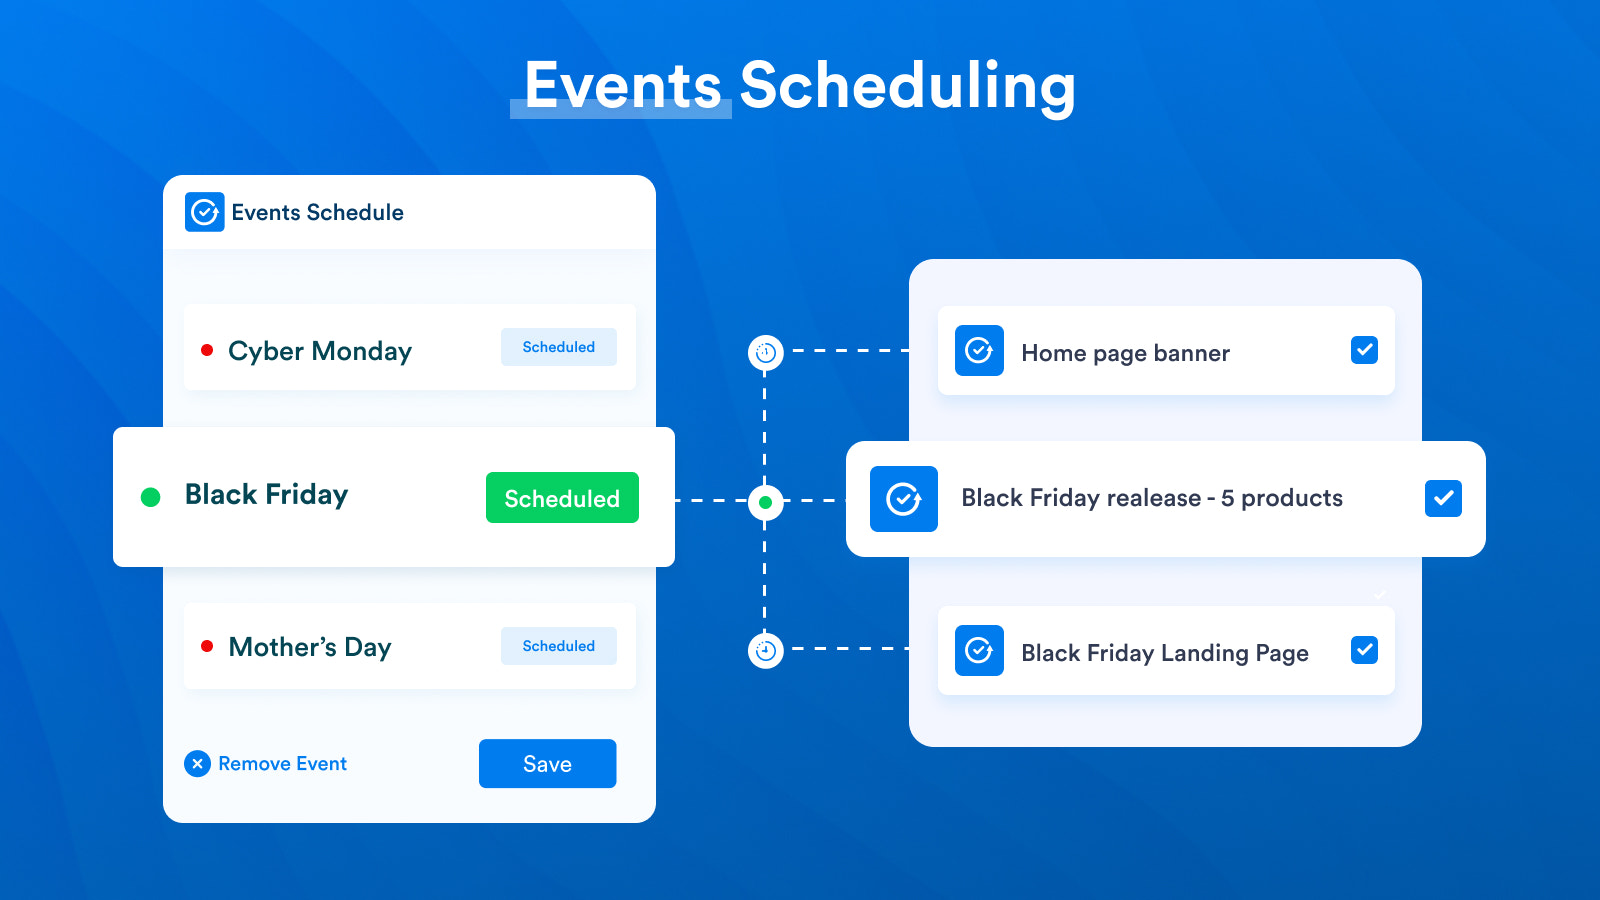 ¡Programa múltiples eventos y múltiples actualizaciones dentro de cada evento!